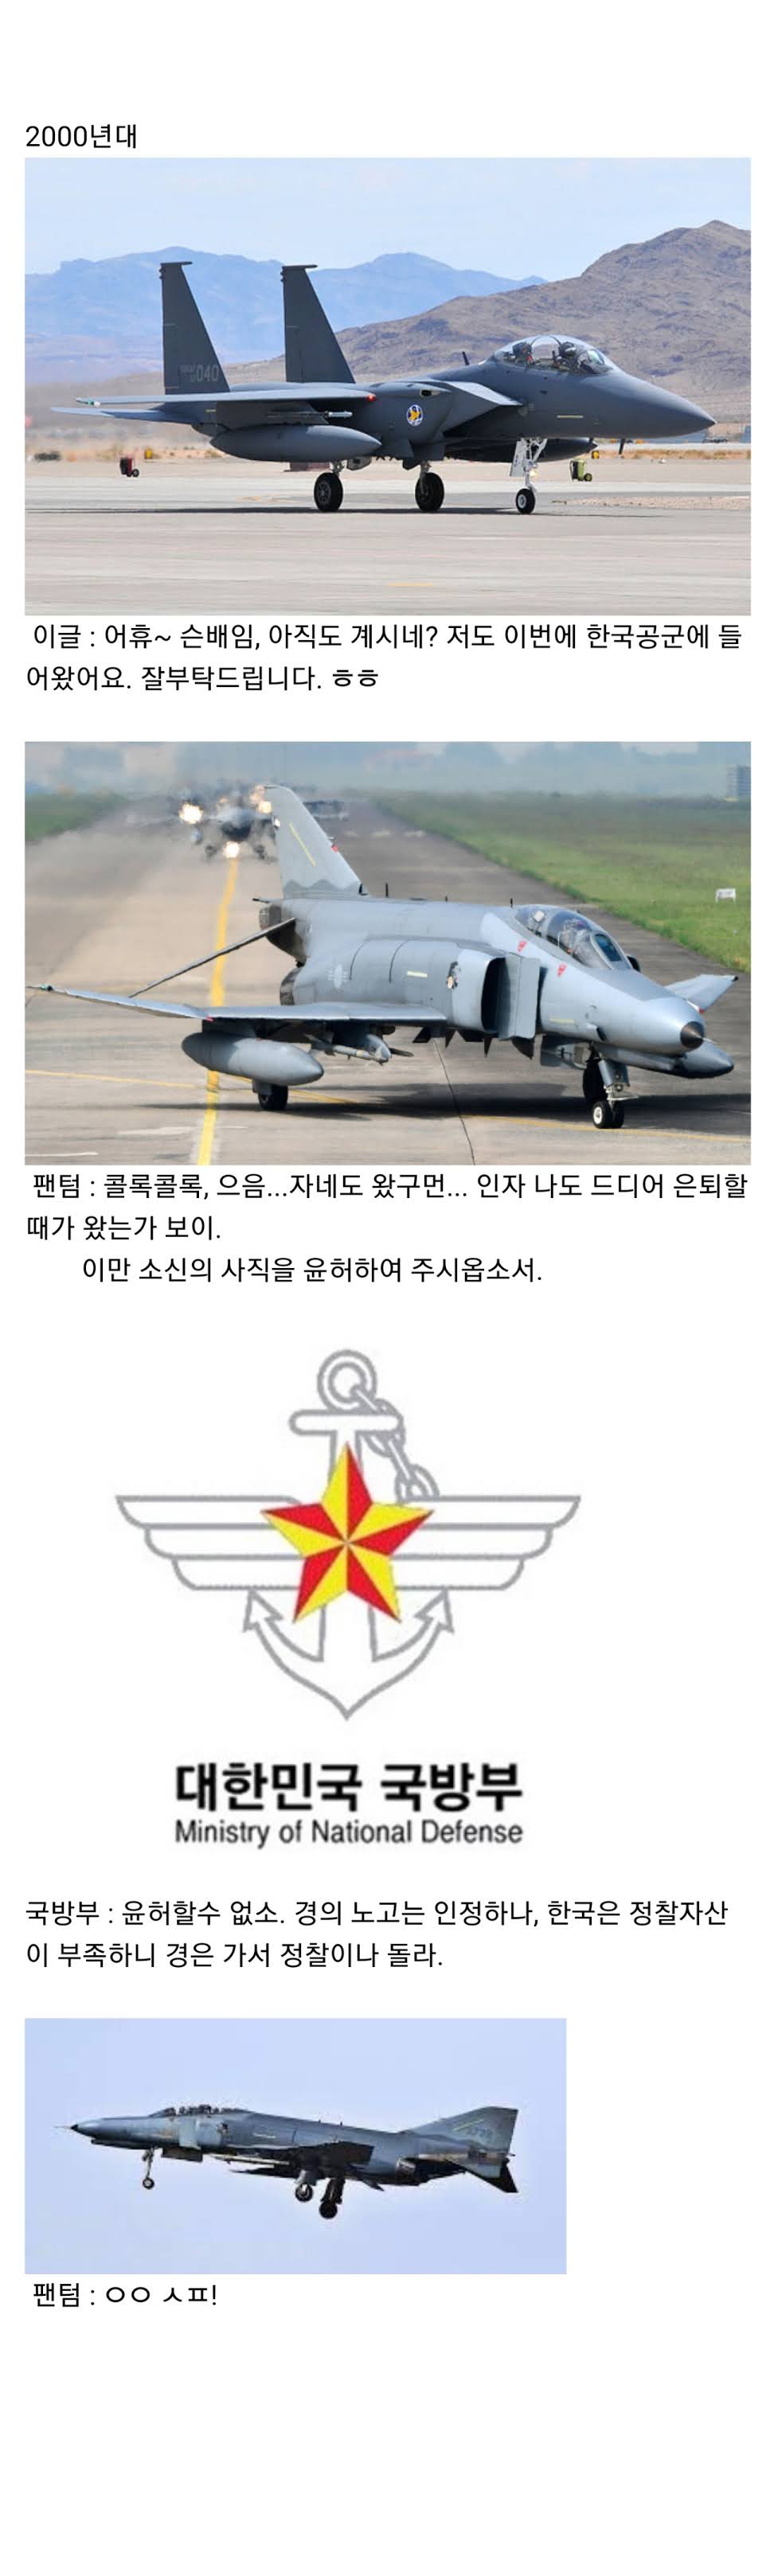 한국 공군 잔혹사 - 꾸르